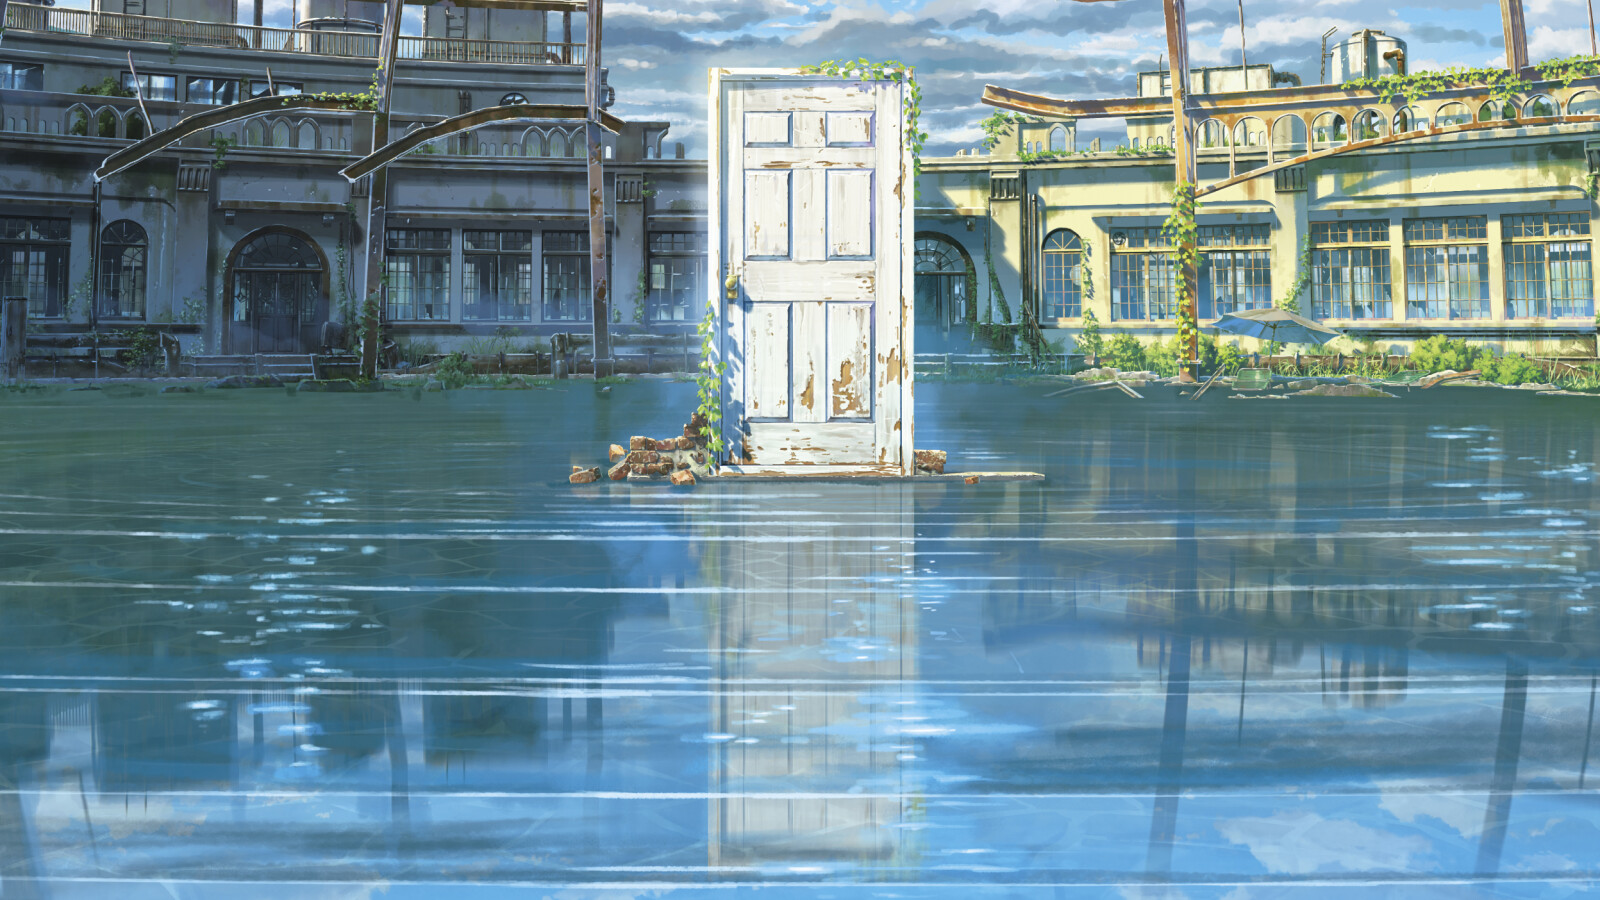 Kimi no Na wa.: Divulgados 3 comerciais de TV para o Filme de Makoto  Shinkai » Anime Xis